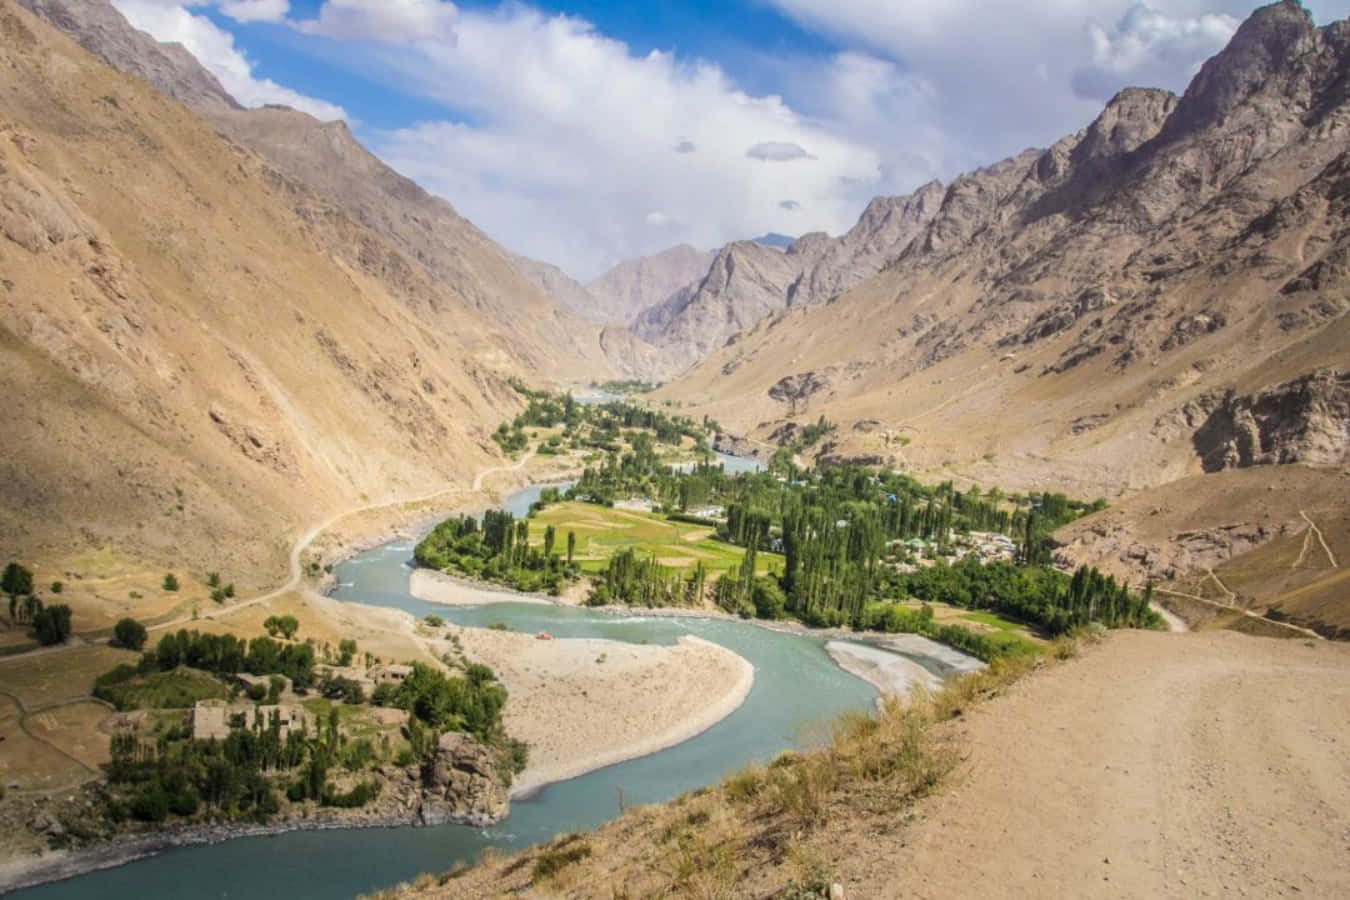 Afghanischeswüstengebiet - Ein Blick Auf Das Vielfältige Terrain Dieses Bergigen Landes.